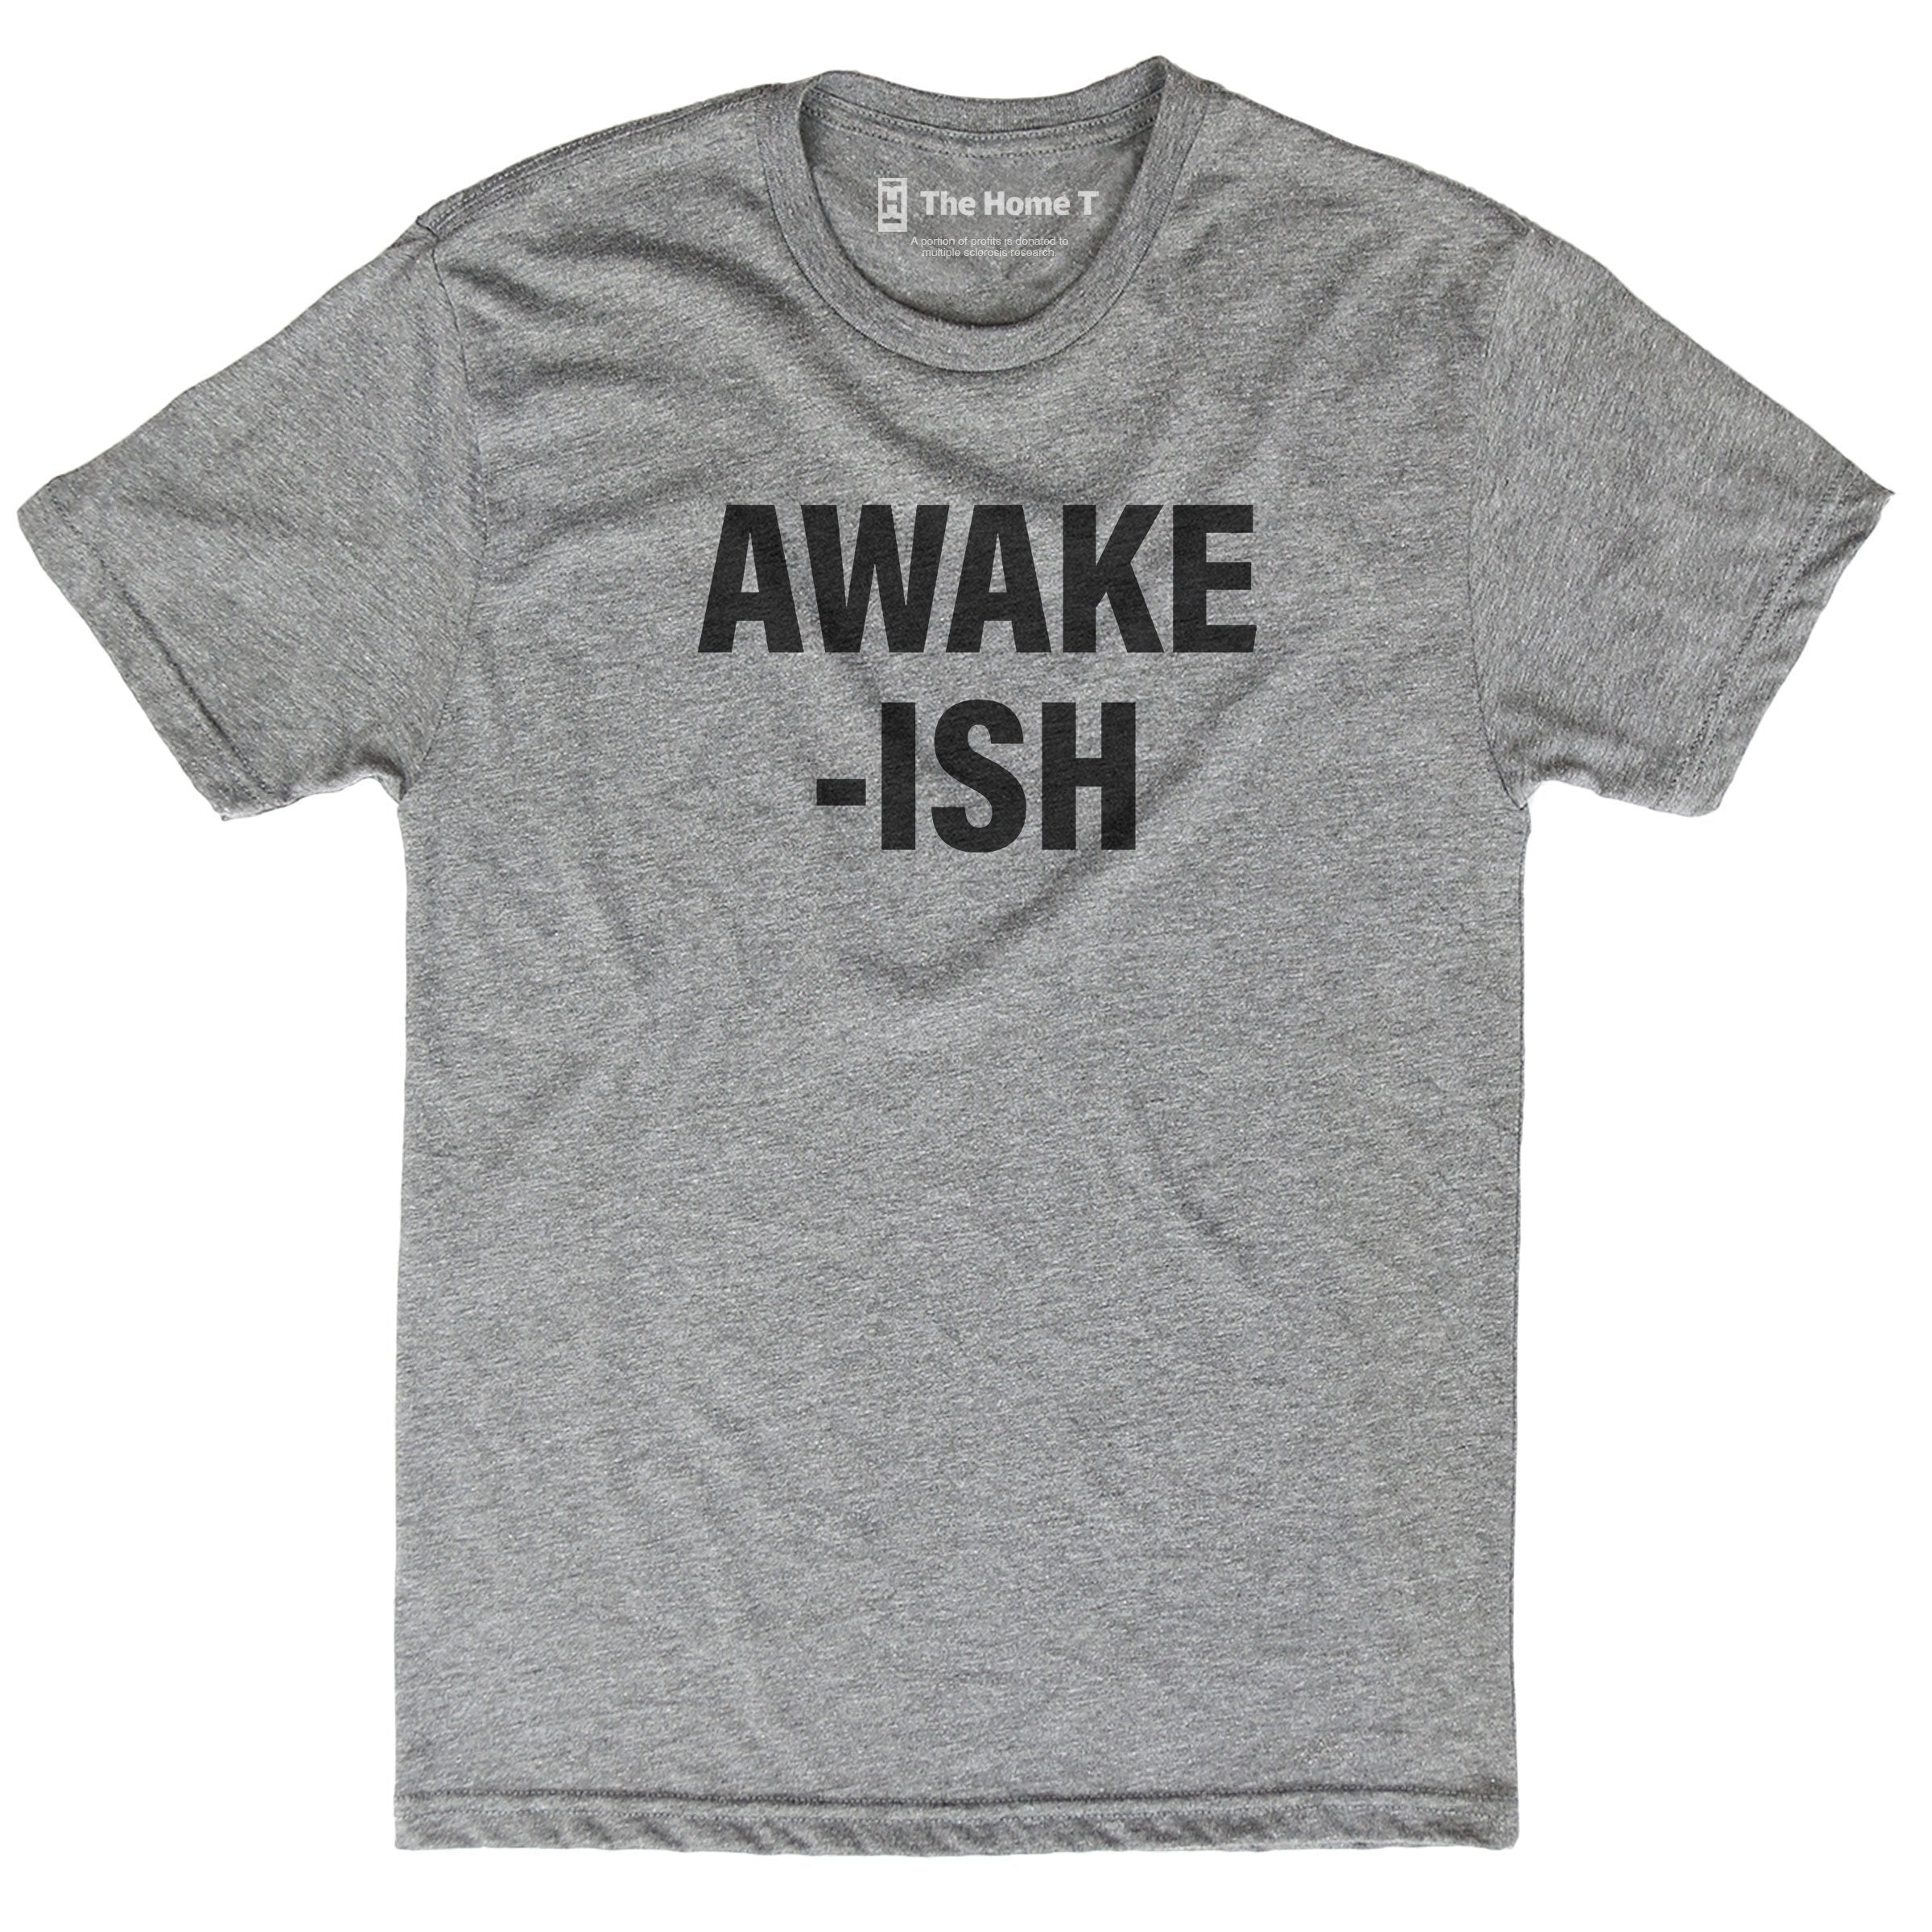 AWAKE-ISH